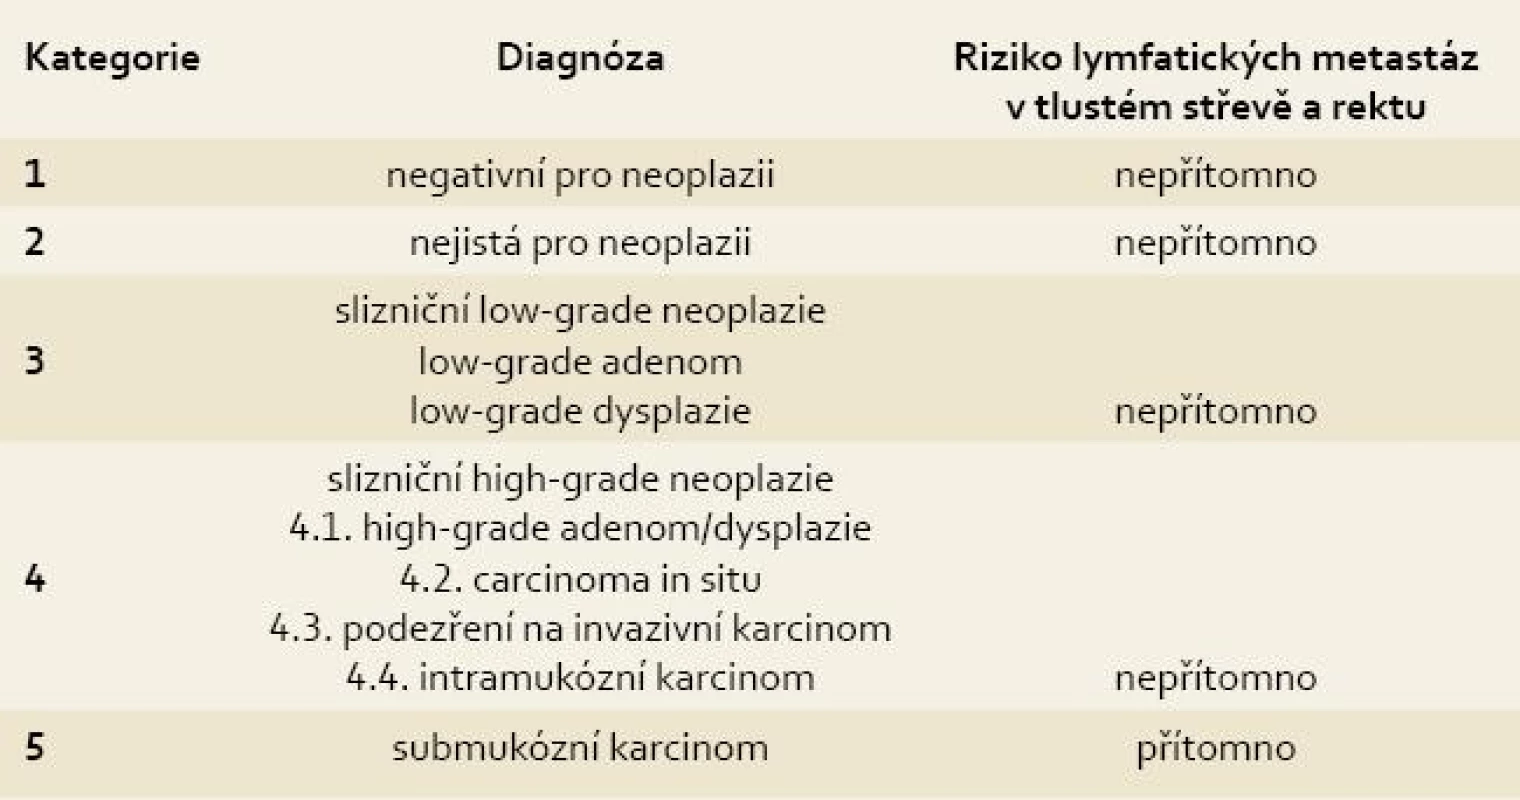 Revidovaná Vídeňská klasifikace gastrointestinálních epiteliálních neoplazií.
Tab. 1. The revised Vienna classification of gastrointestinal epithelial neoplasia.